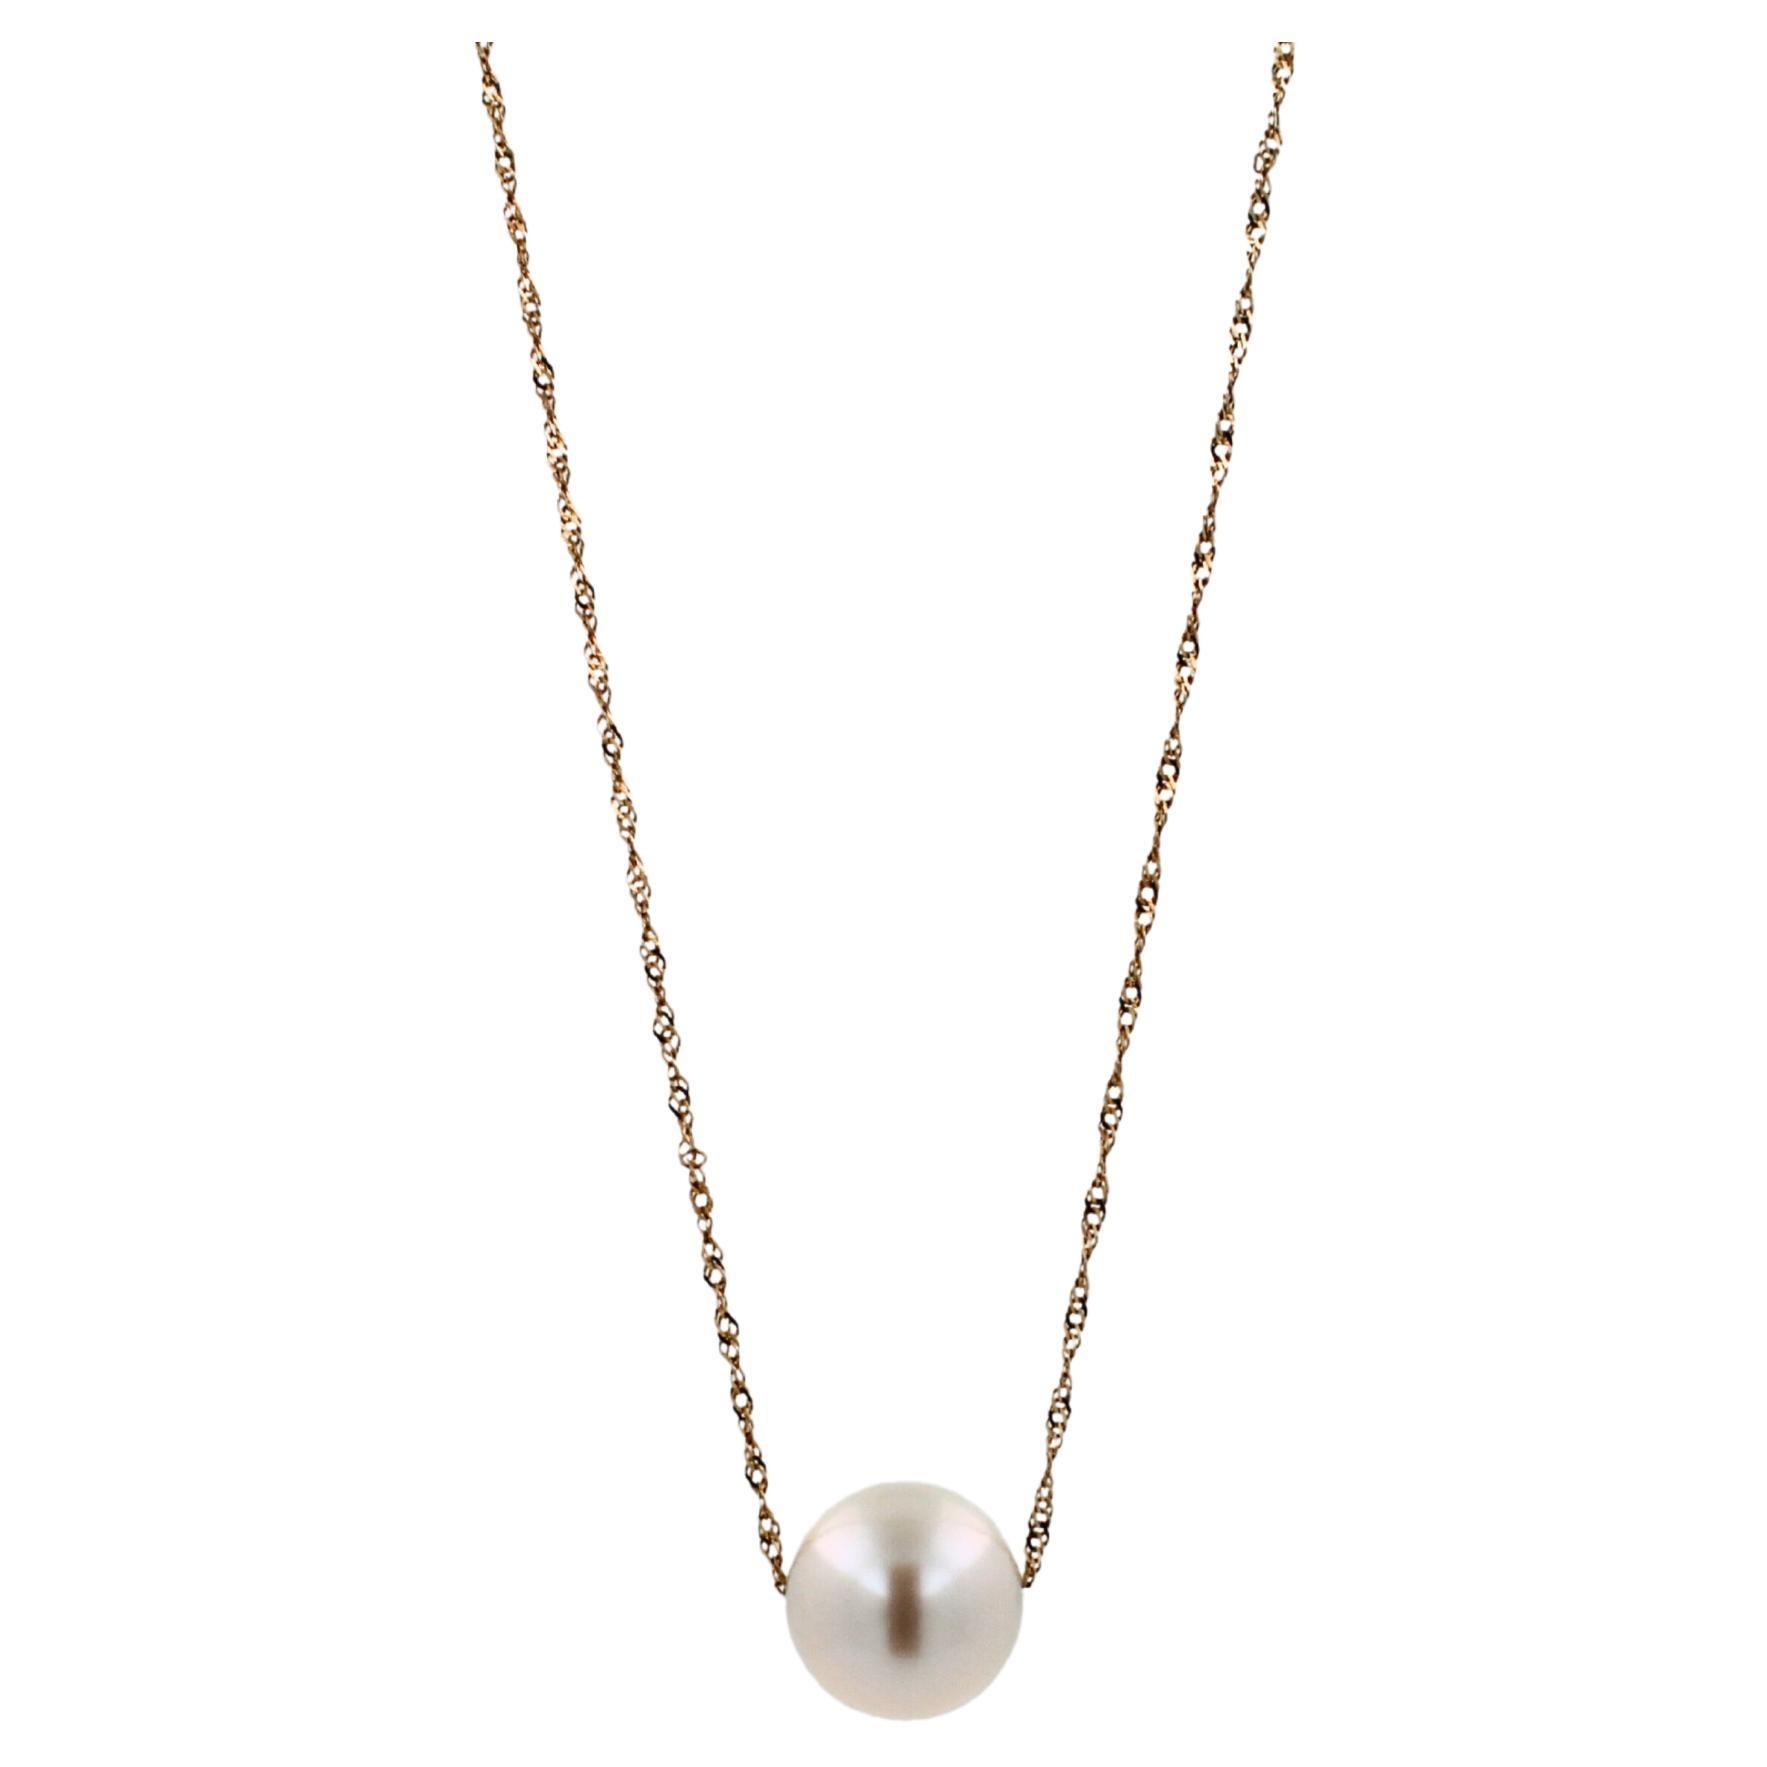 Klassische weiße Perle 14 Karat Gelbgold zierliche Kette Anhänger Charme Halskette